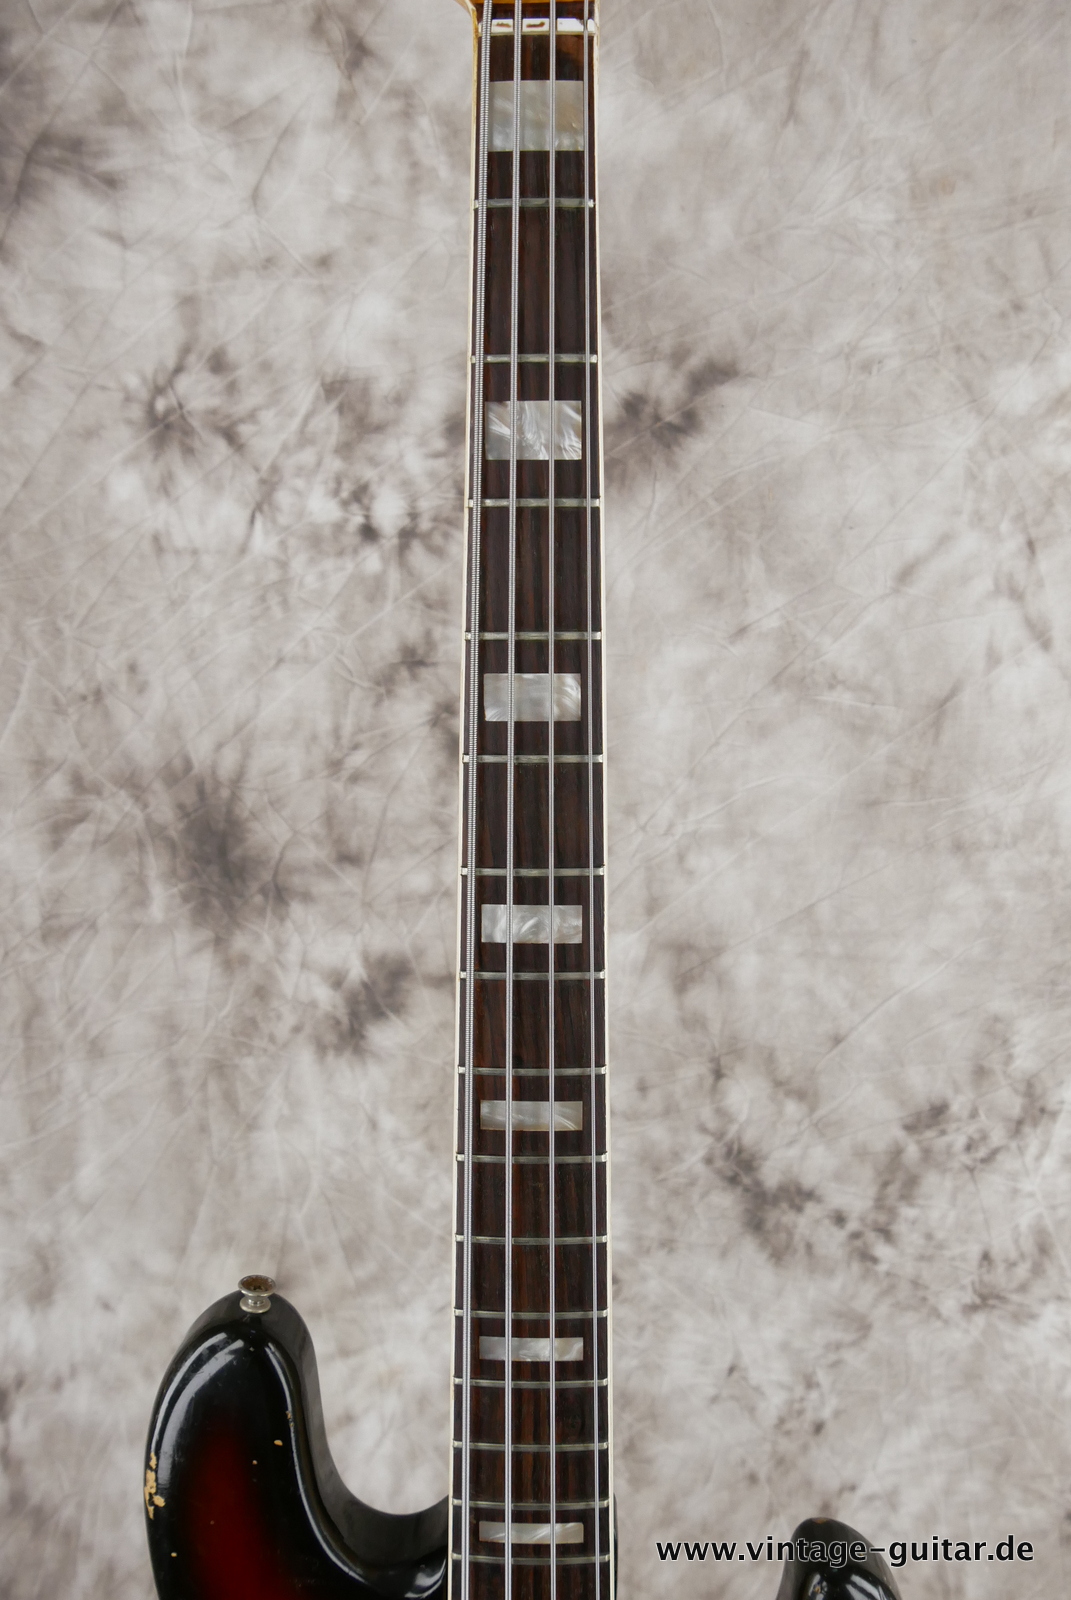 Fender-Jazz-Bass-alder-body-1974-sunburst-005.JPG